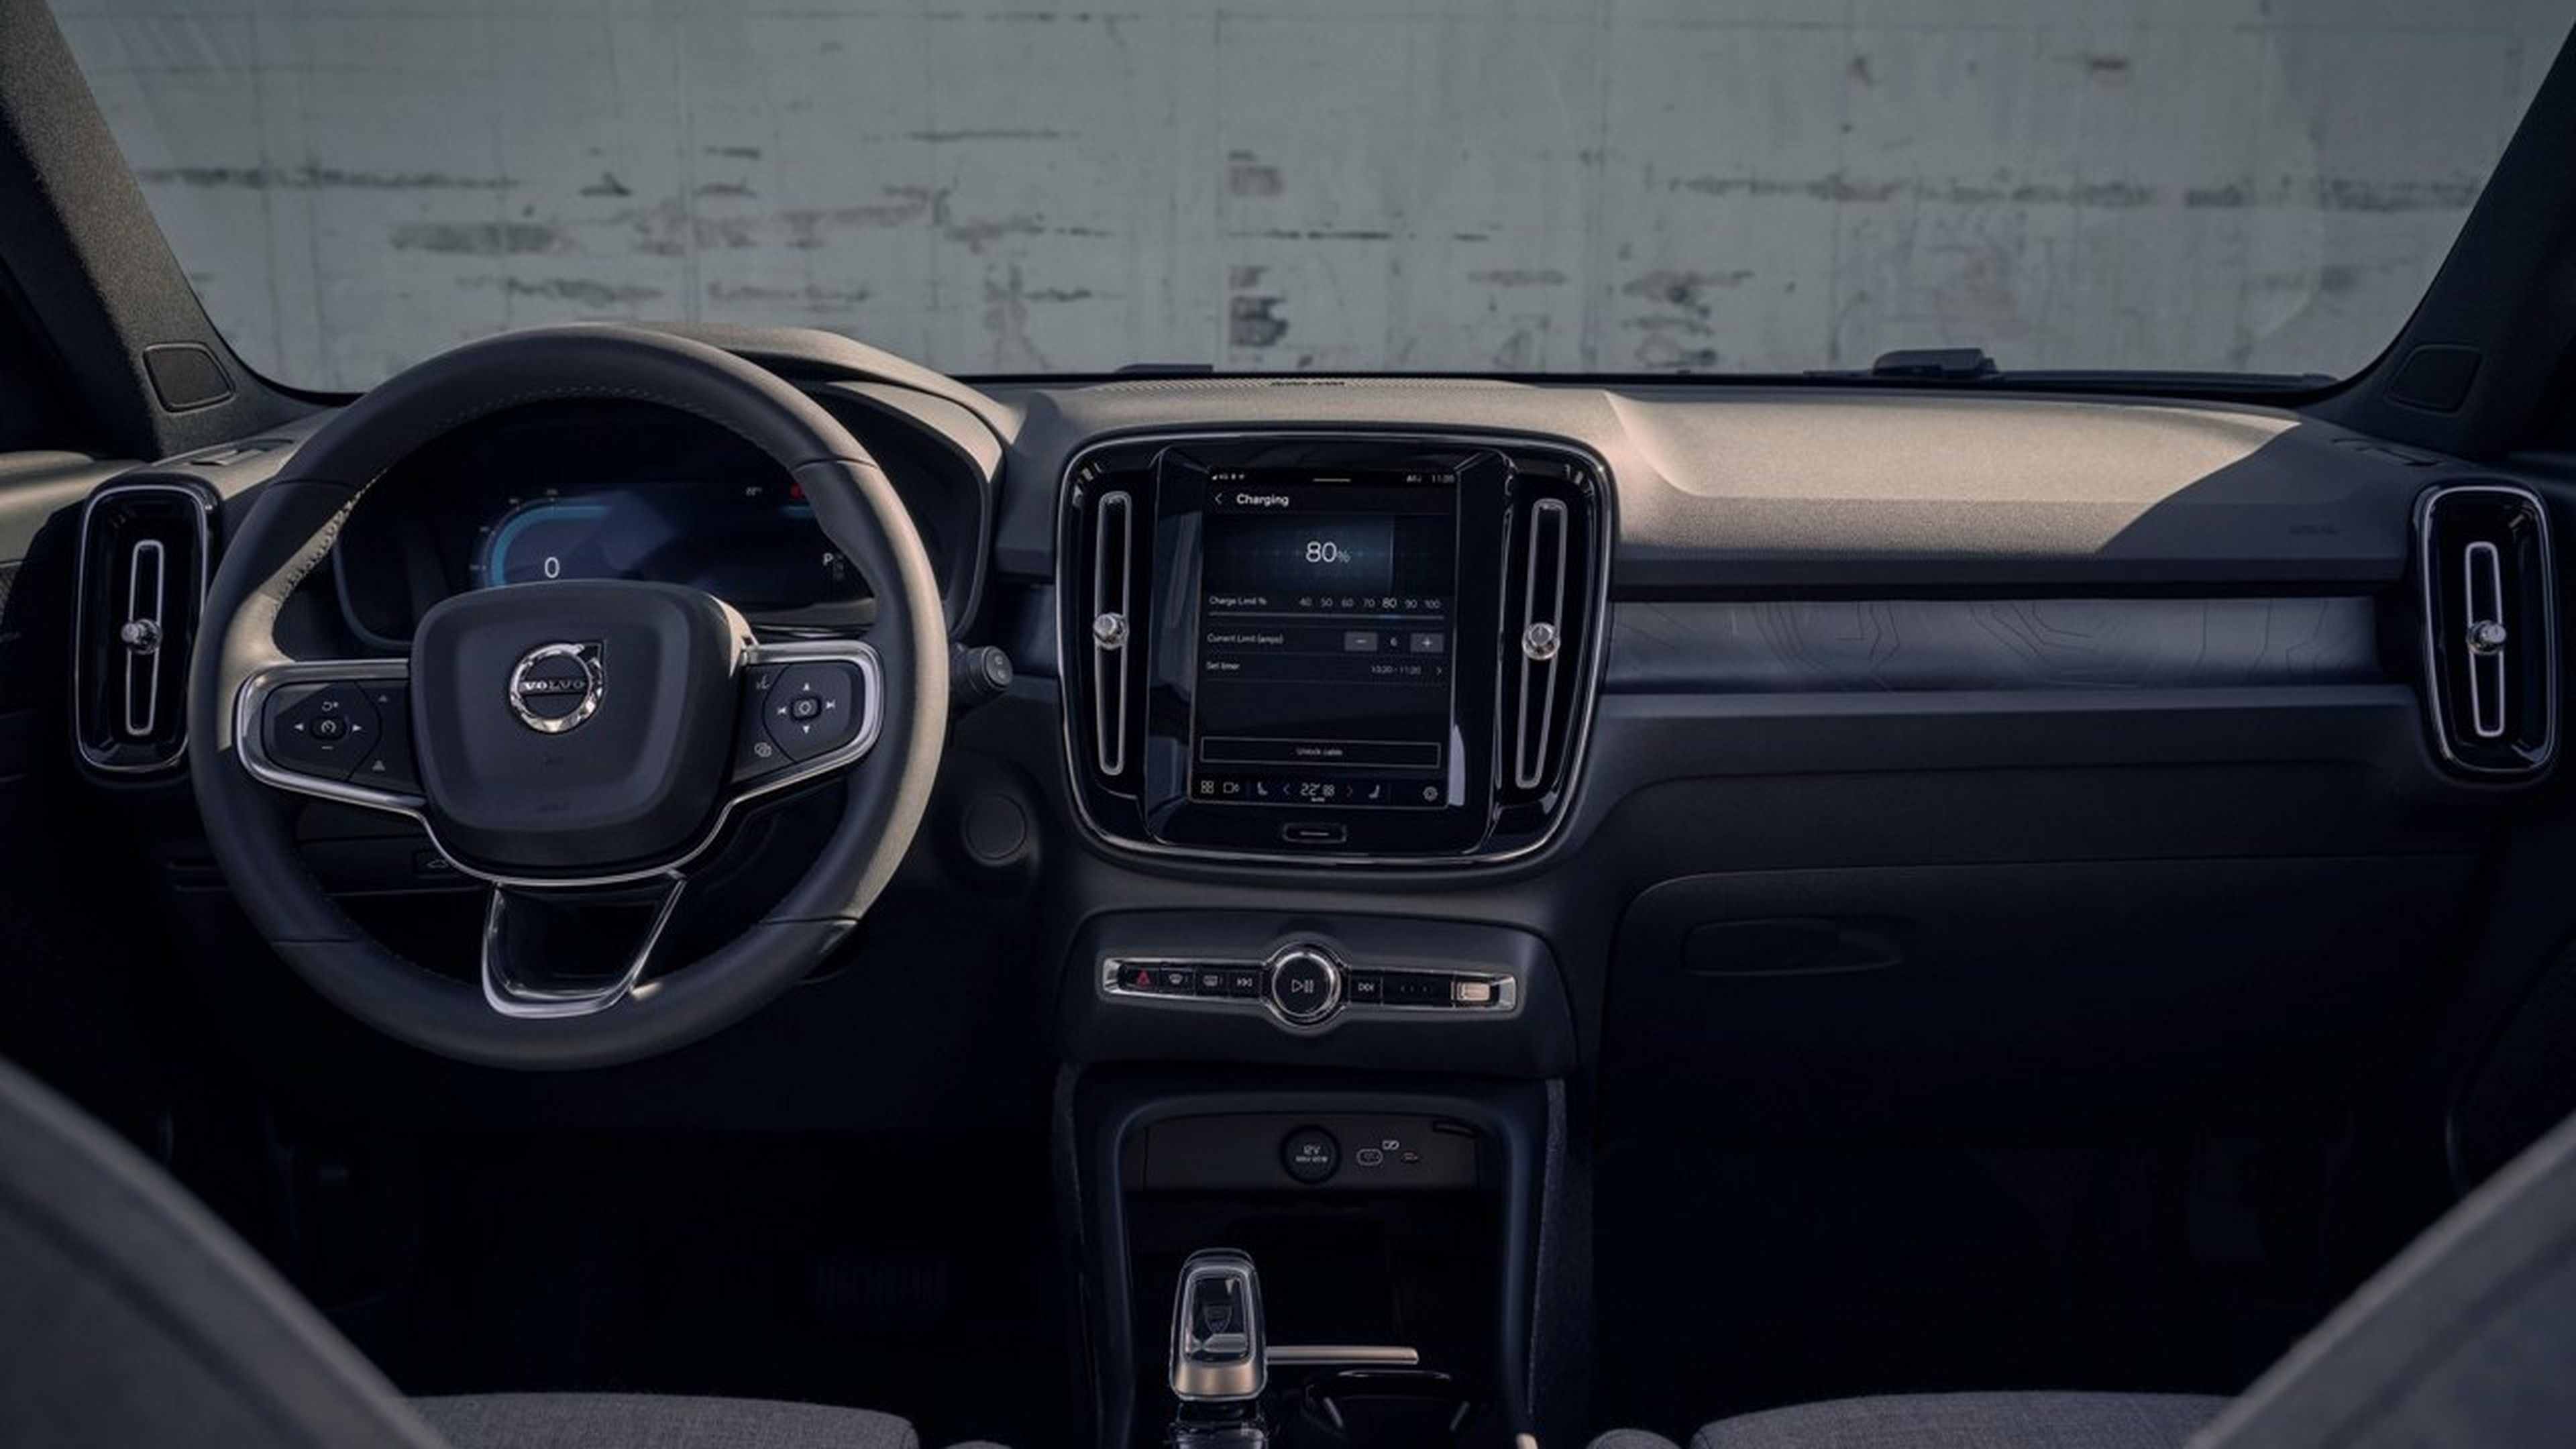 Mantiene las formas habituales de los interiores de Volvo